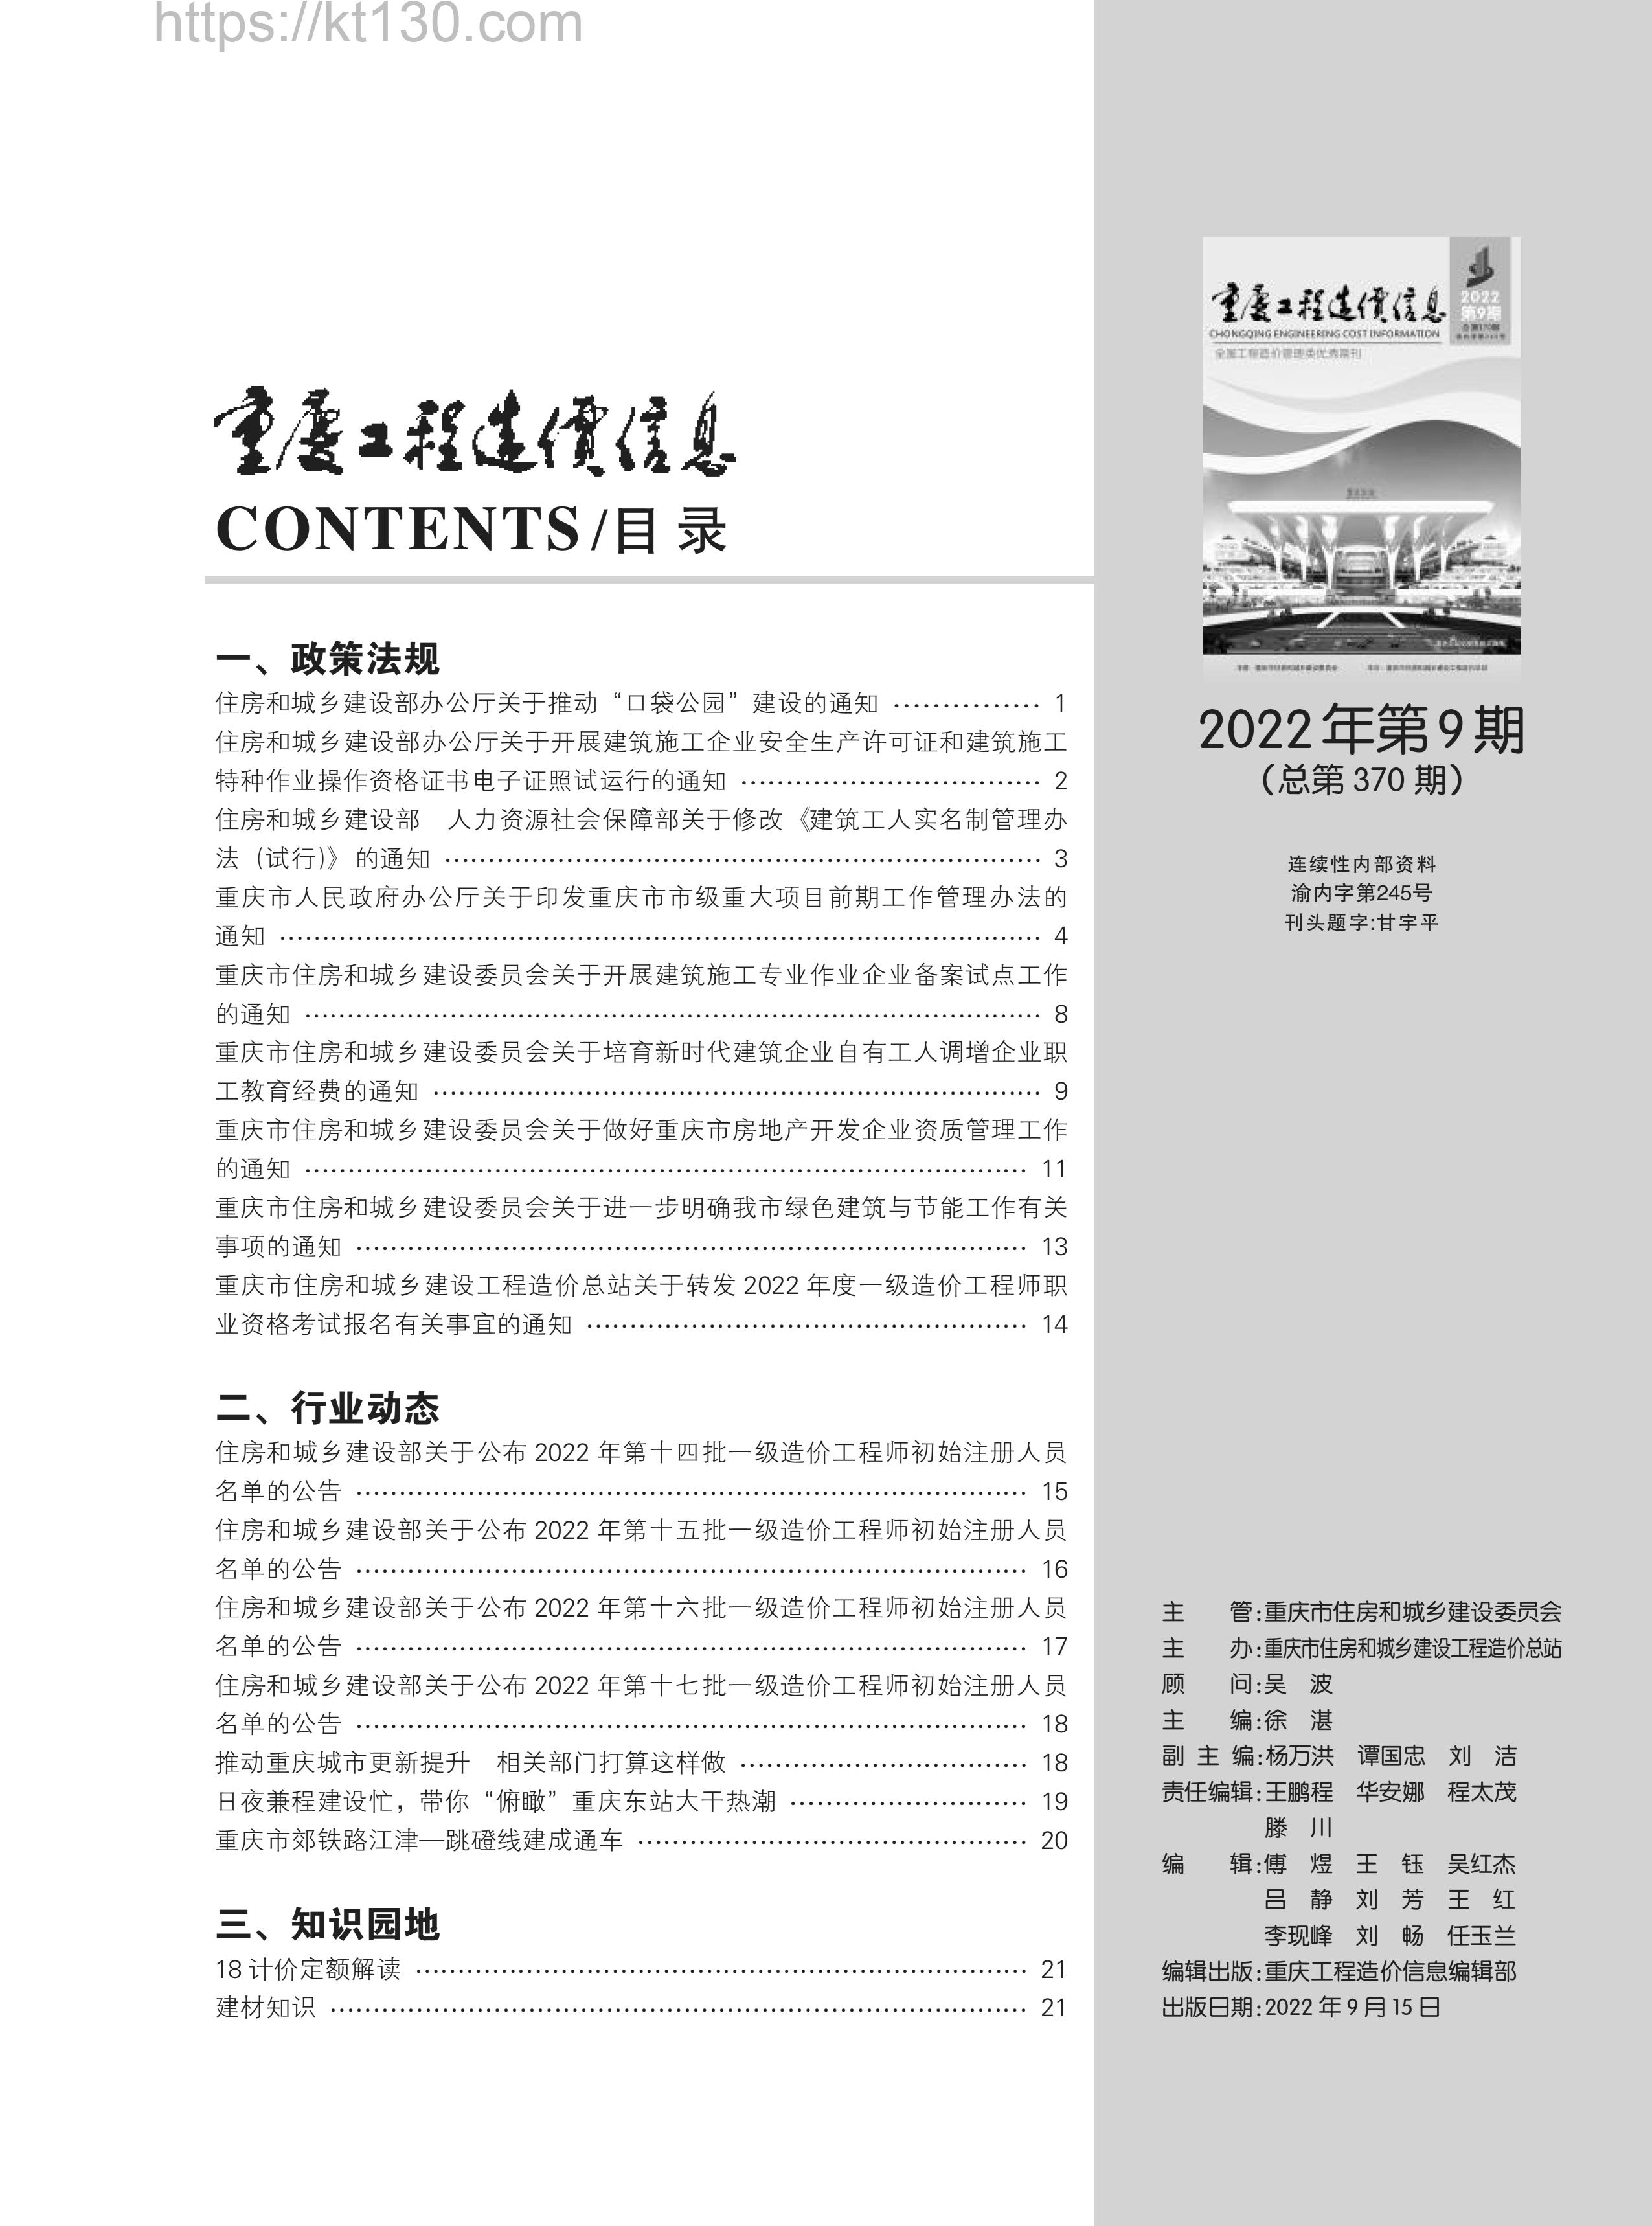 重庆市2022年第九期建筑材料价_目录